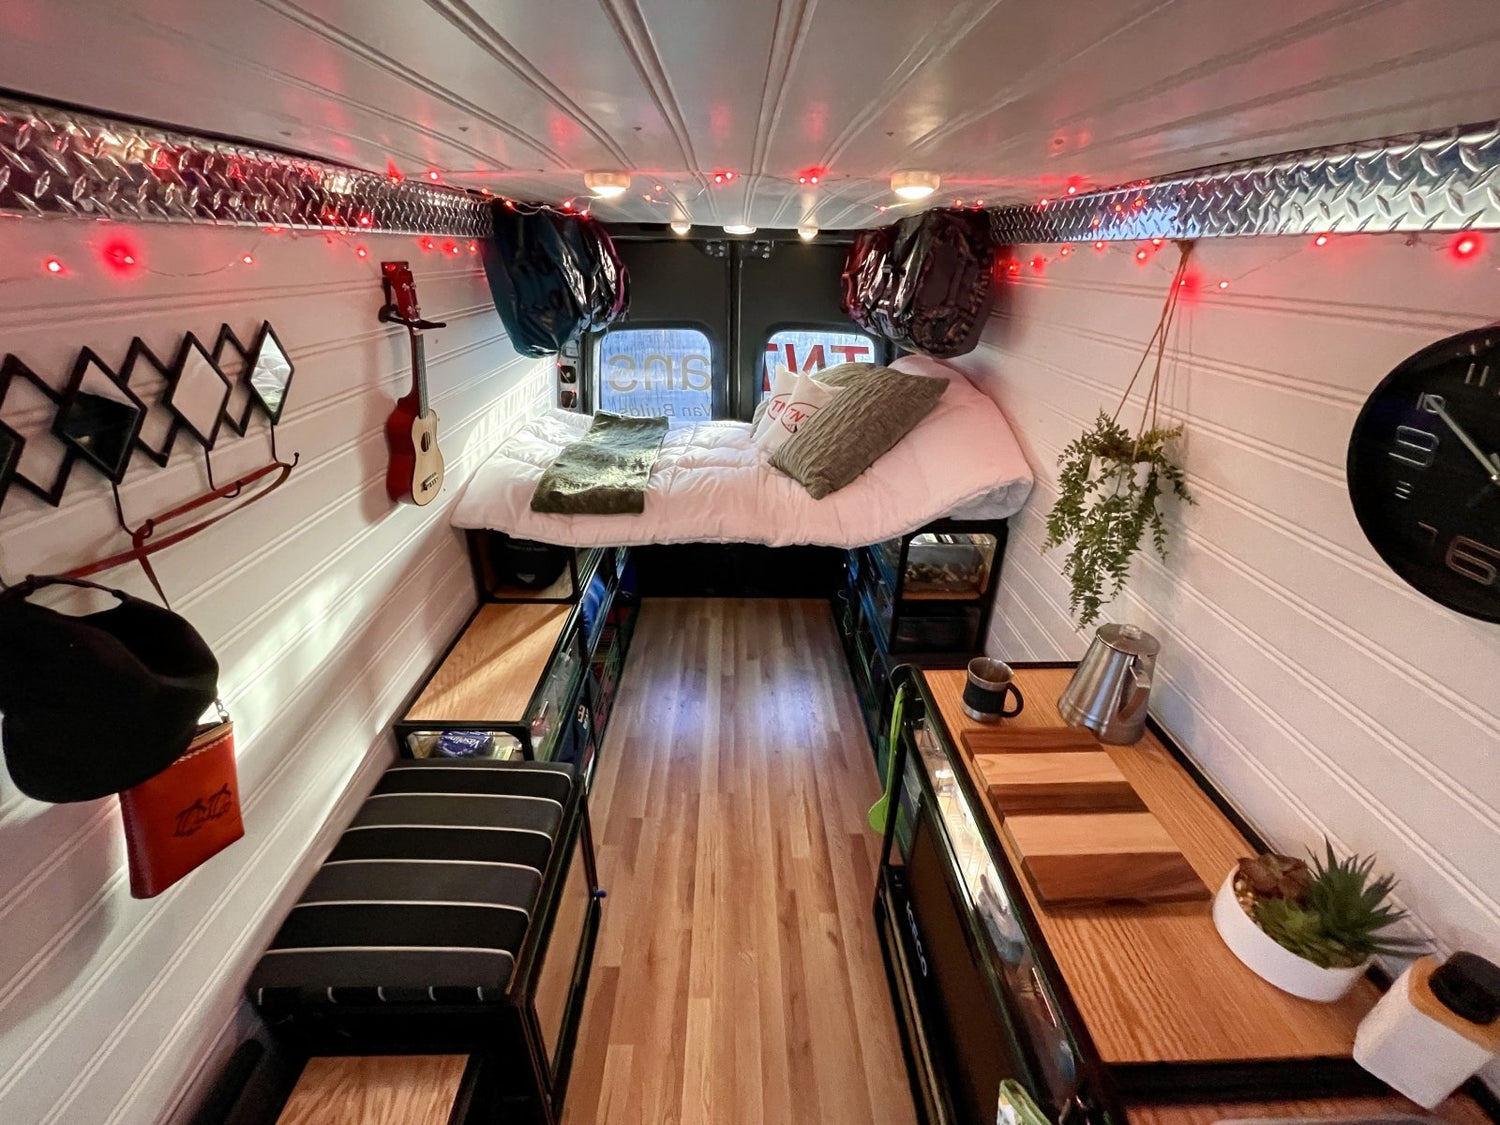 van kitchen in camper van conversion with red lights